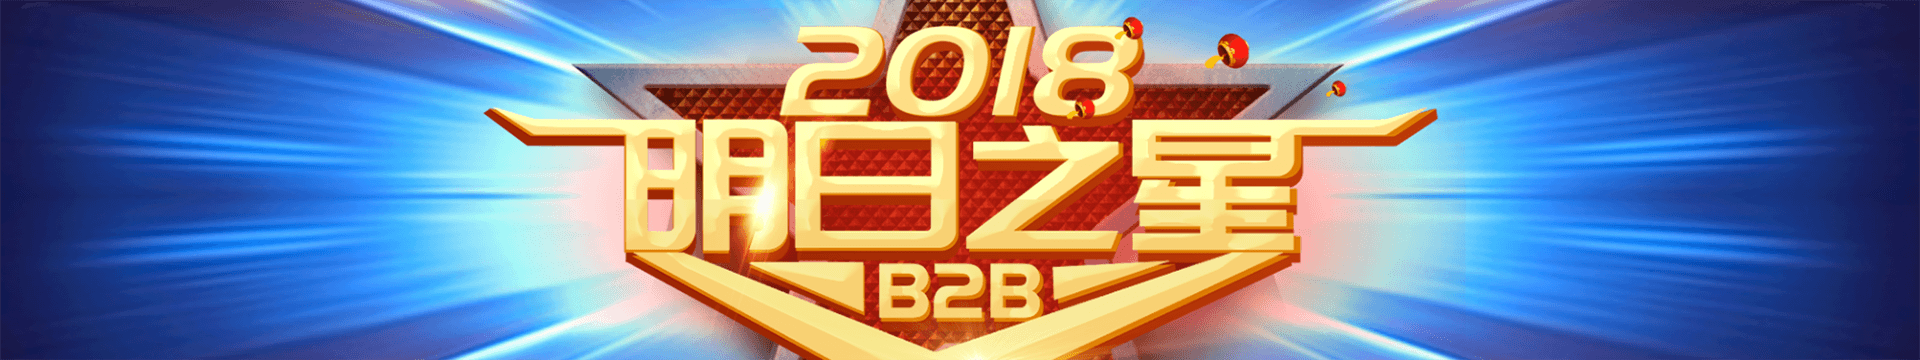 2018中国首届“B2B明日之星”争霸赛